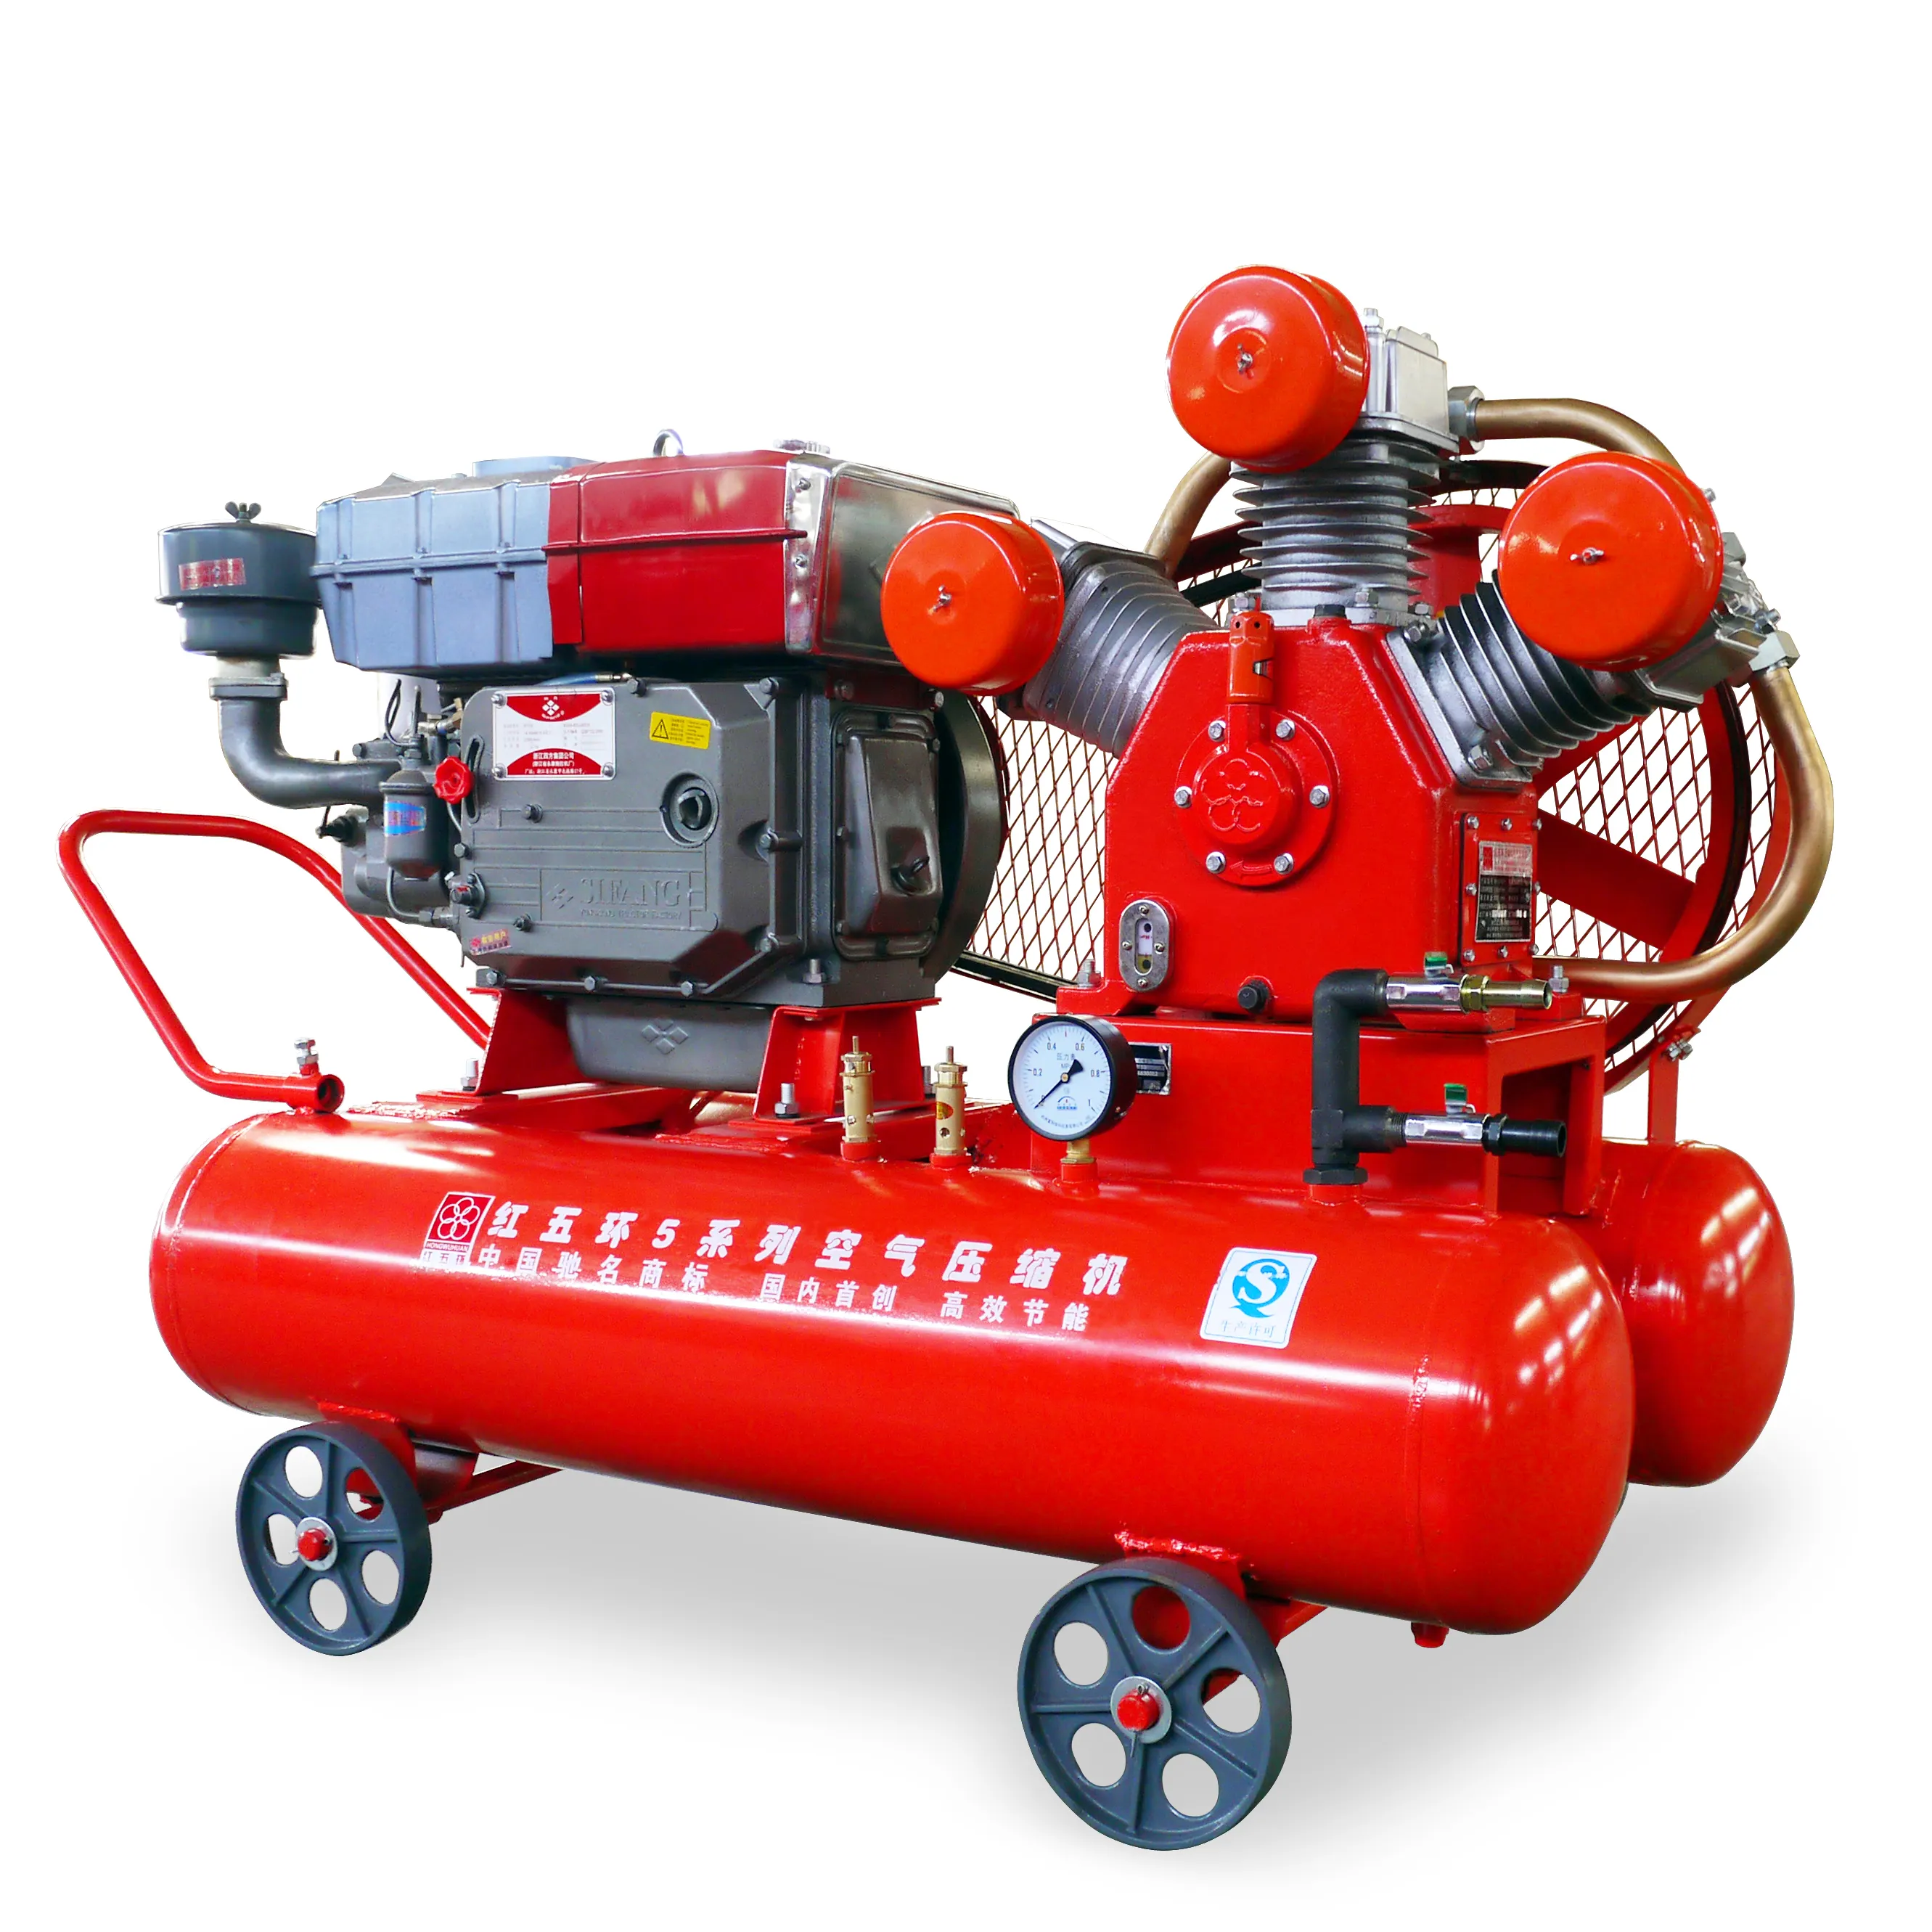 Compressor de ar pequeno para motor Hongwuhuan, pistão diesel W2.85-5 5bar, compressor de ar alternativo para martelo